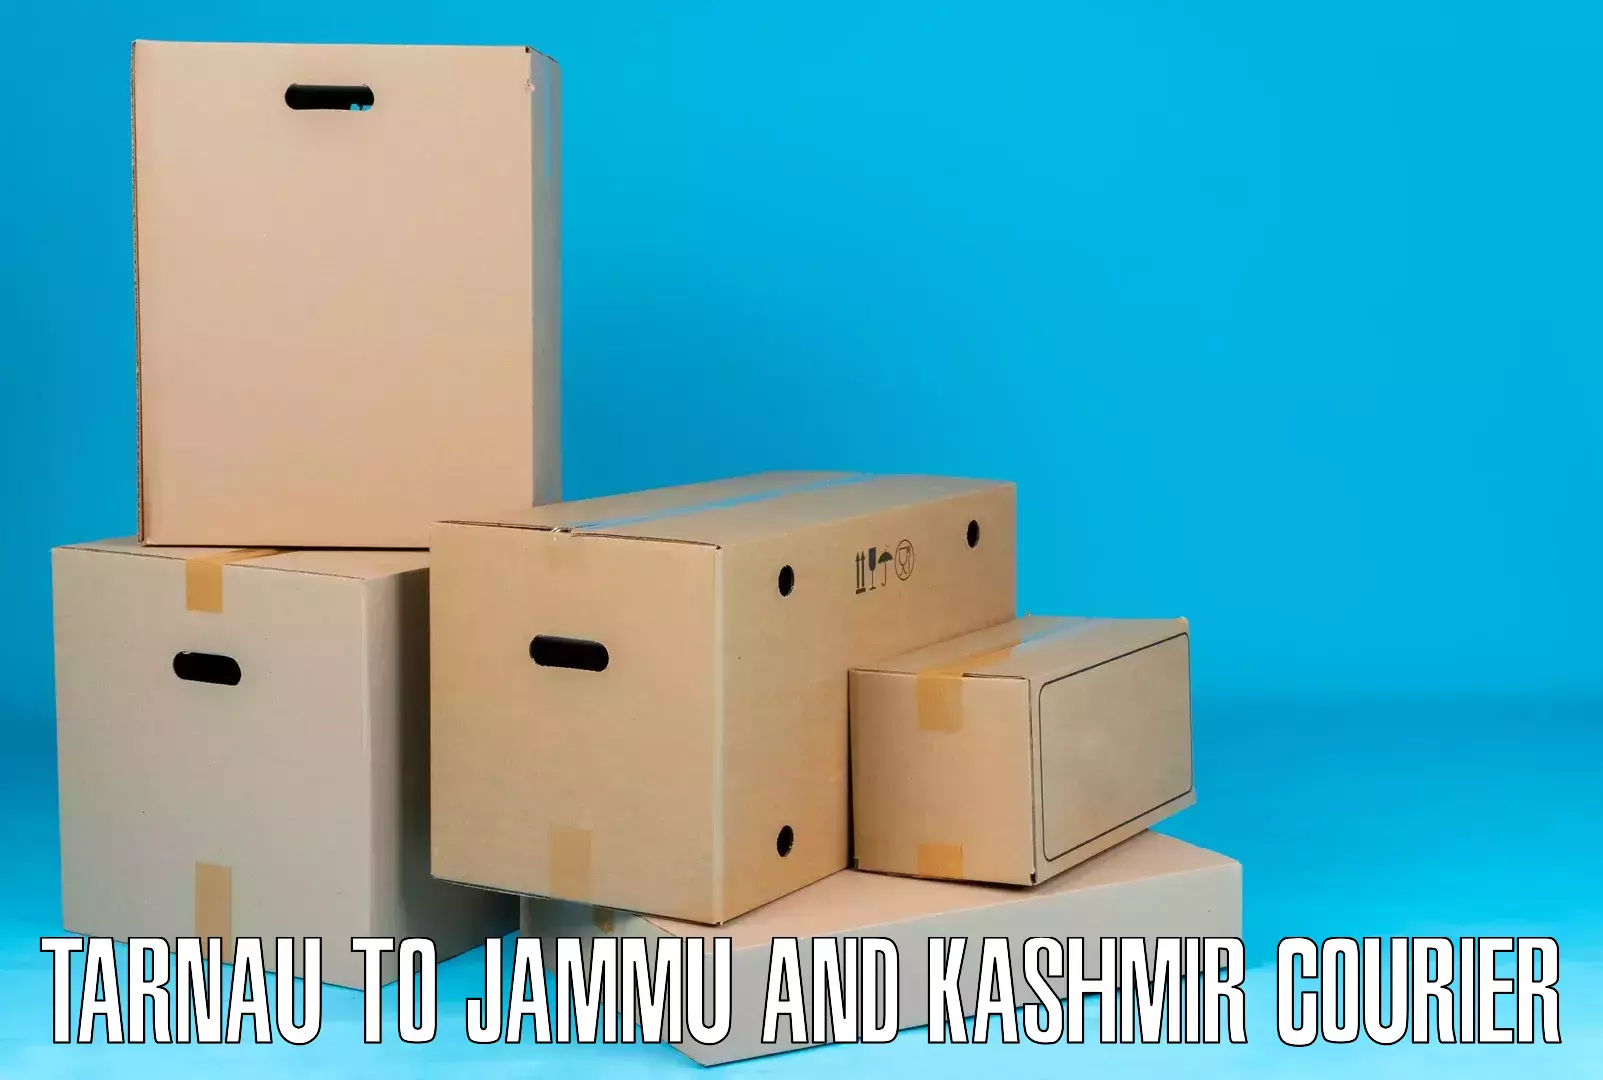 Customer-centric shipping Tarnau to Jammu